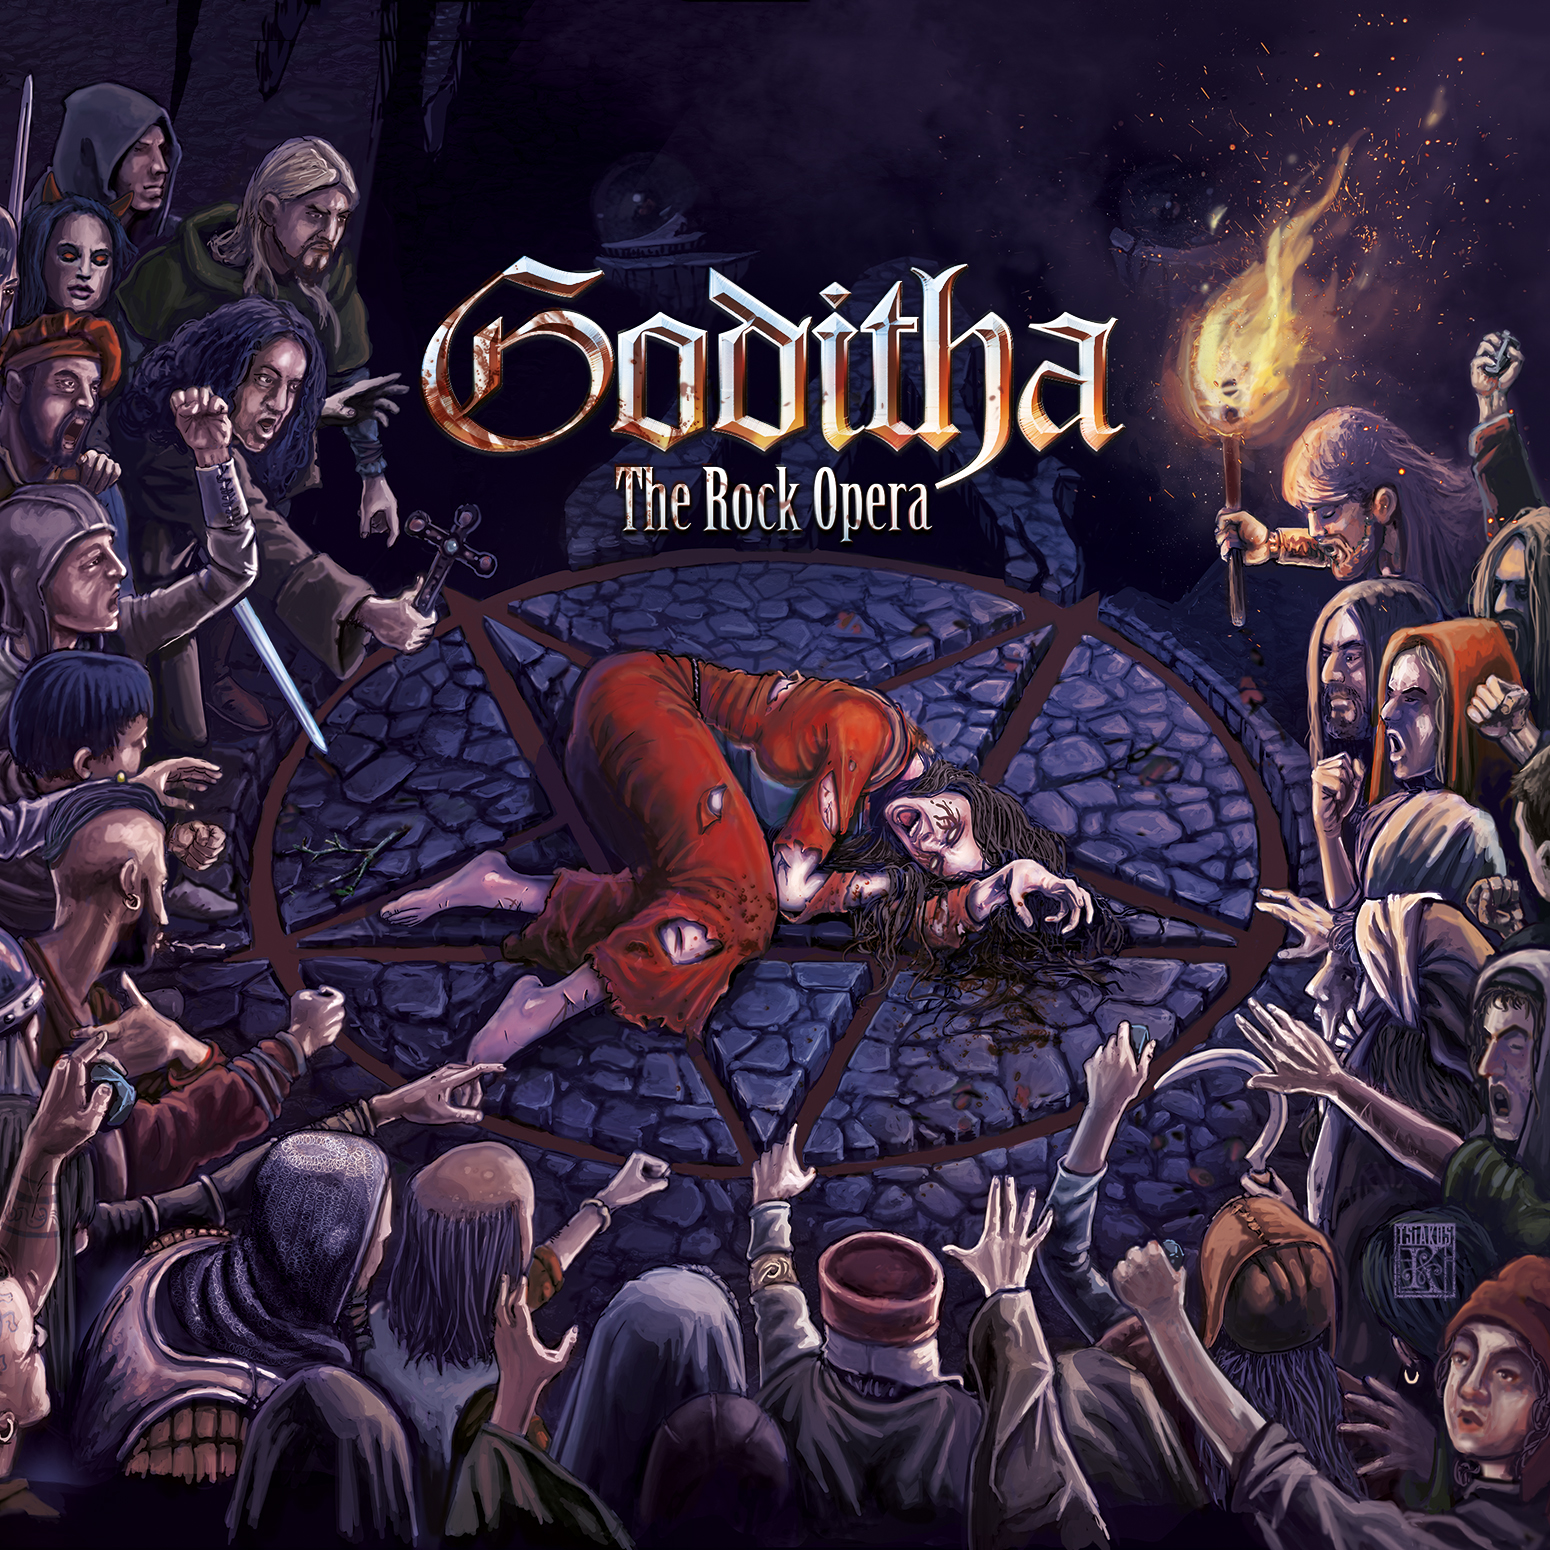 elina-englezou-%ce%b2%ce%bfb-katsionis-goditha-the-rock-opera-ein-album-review